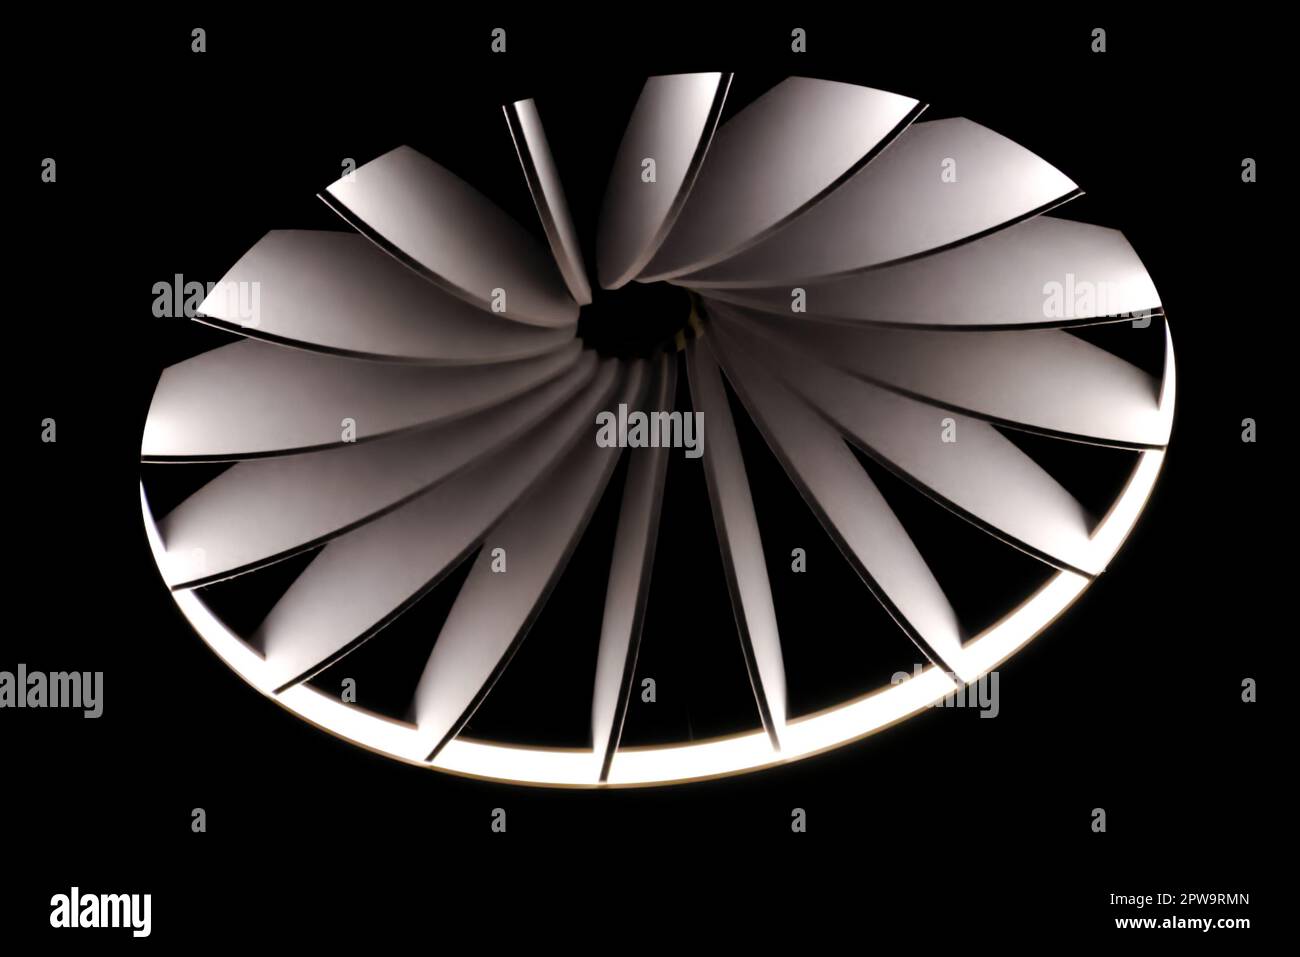 Ventilatore rotativo immagini e fotografie stock ad alta risoluzione - Alamy